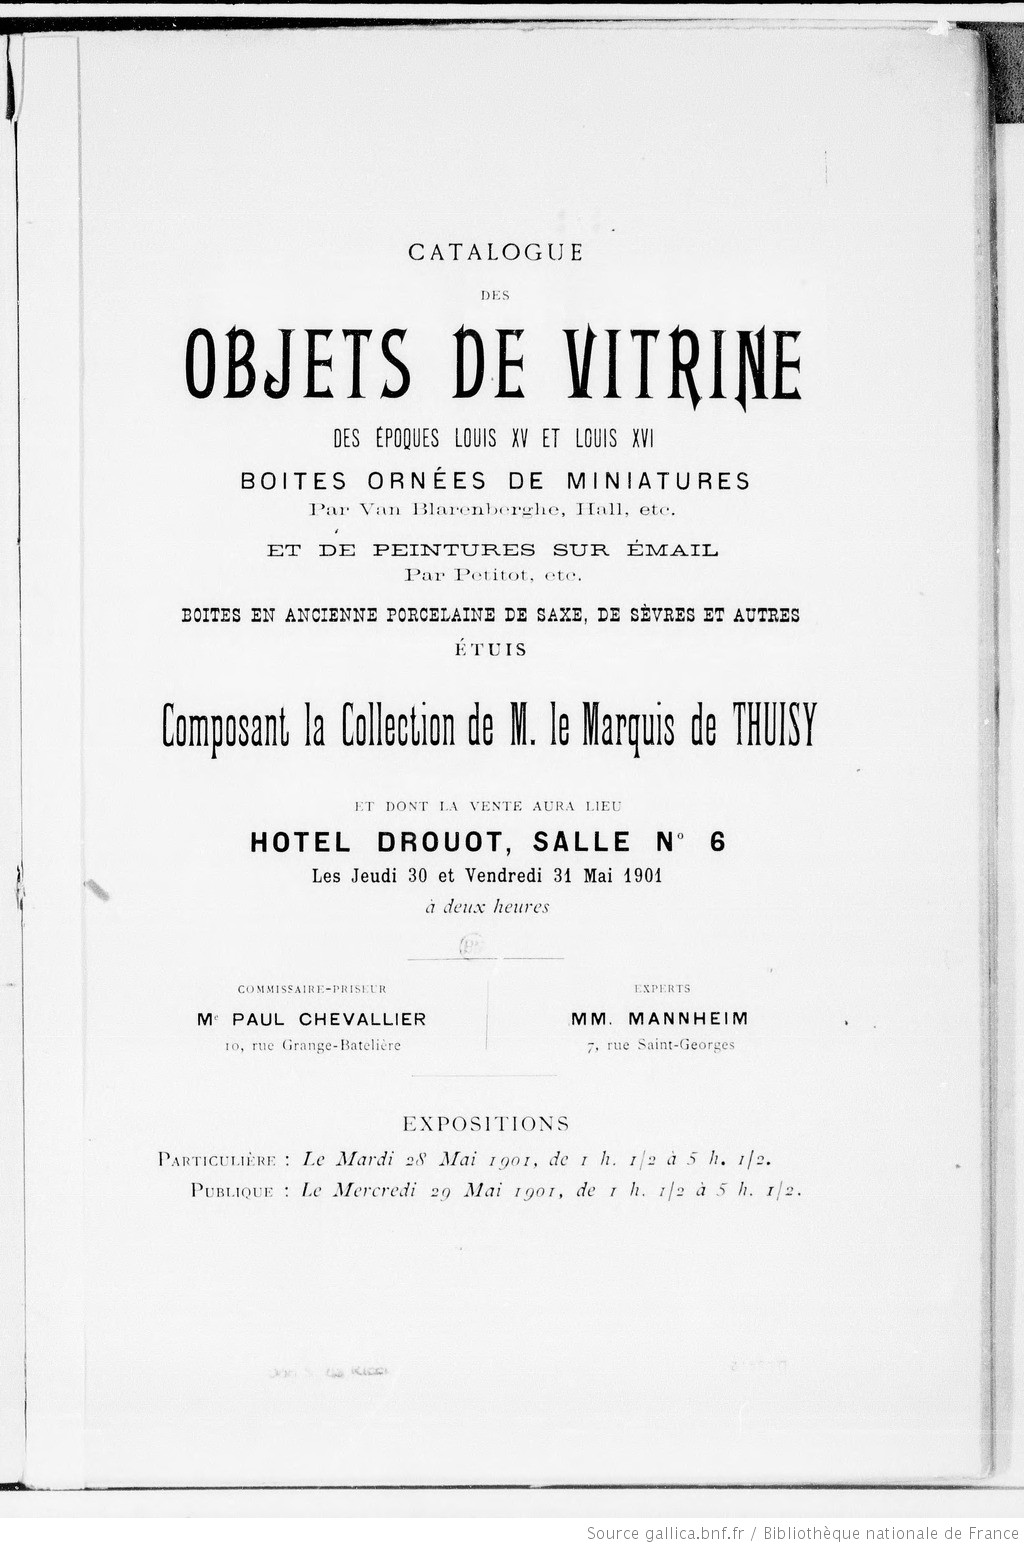 Catalogue des objets de vitrine des époques Louis XV et Louis XVI, boîtes ornées de miniatures... et de peintures sur émail..., étuis composant la collection de M. le marquis de Thuisy...